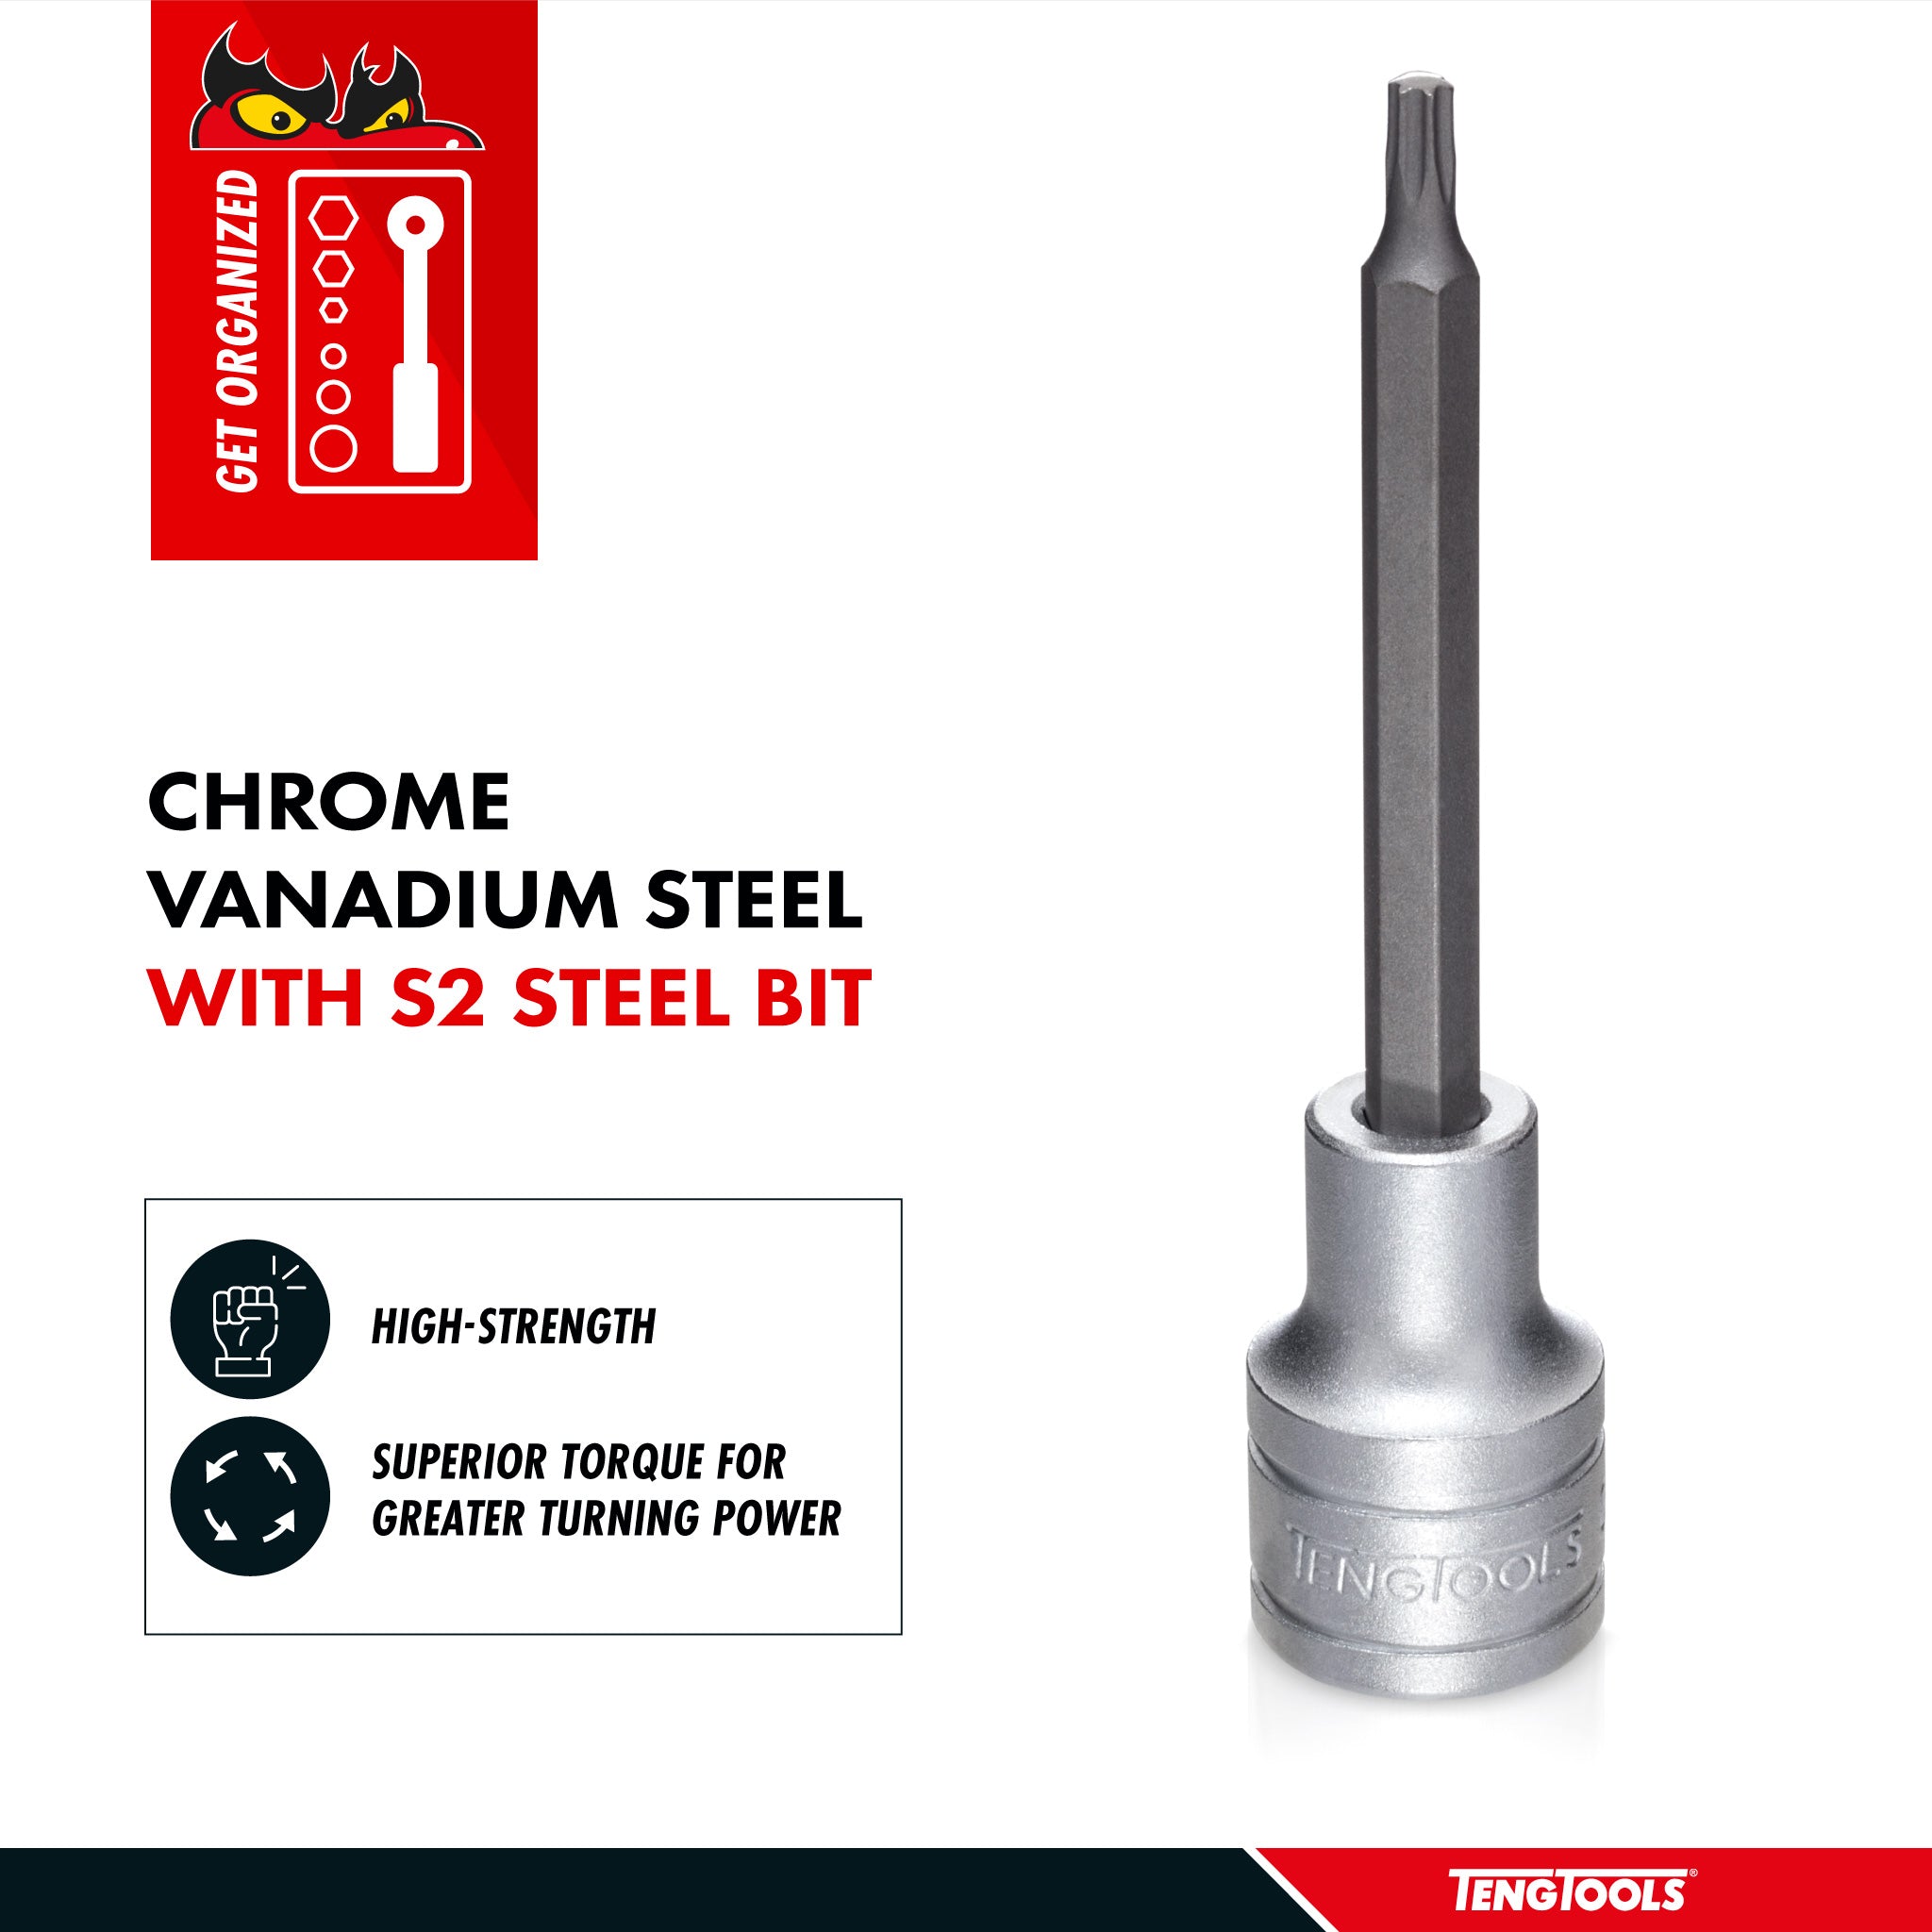 Teng Tools 1/2 Inch Drive Metric Torx TX 3.9 Inch Extra Long Chrome Vanadium Sockets - TX20